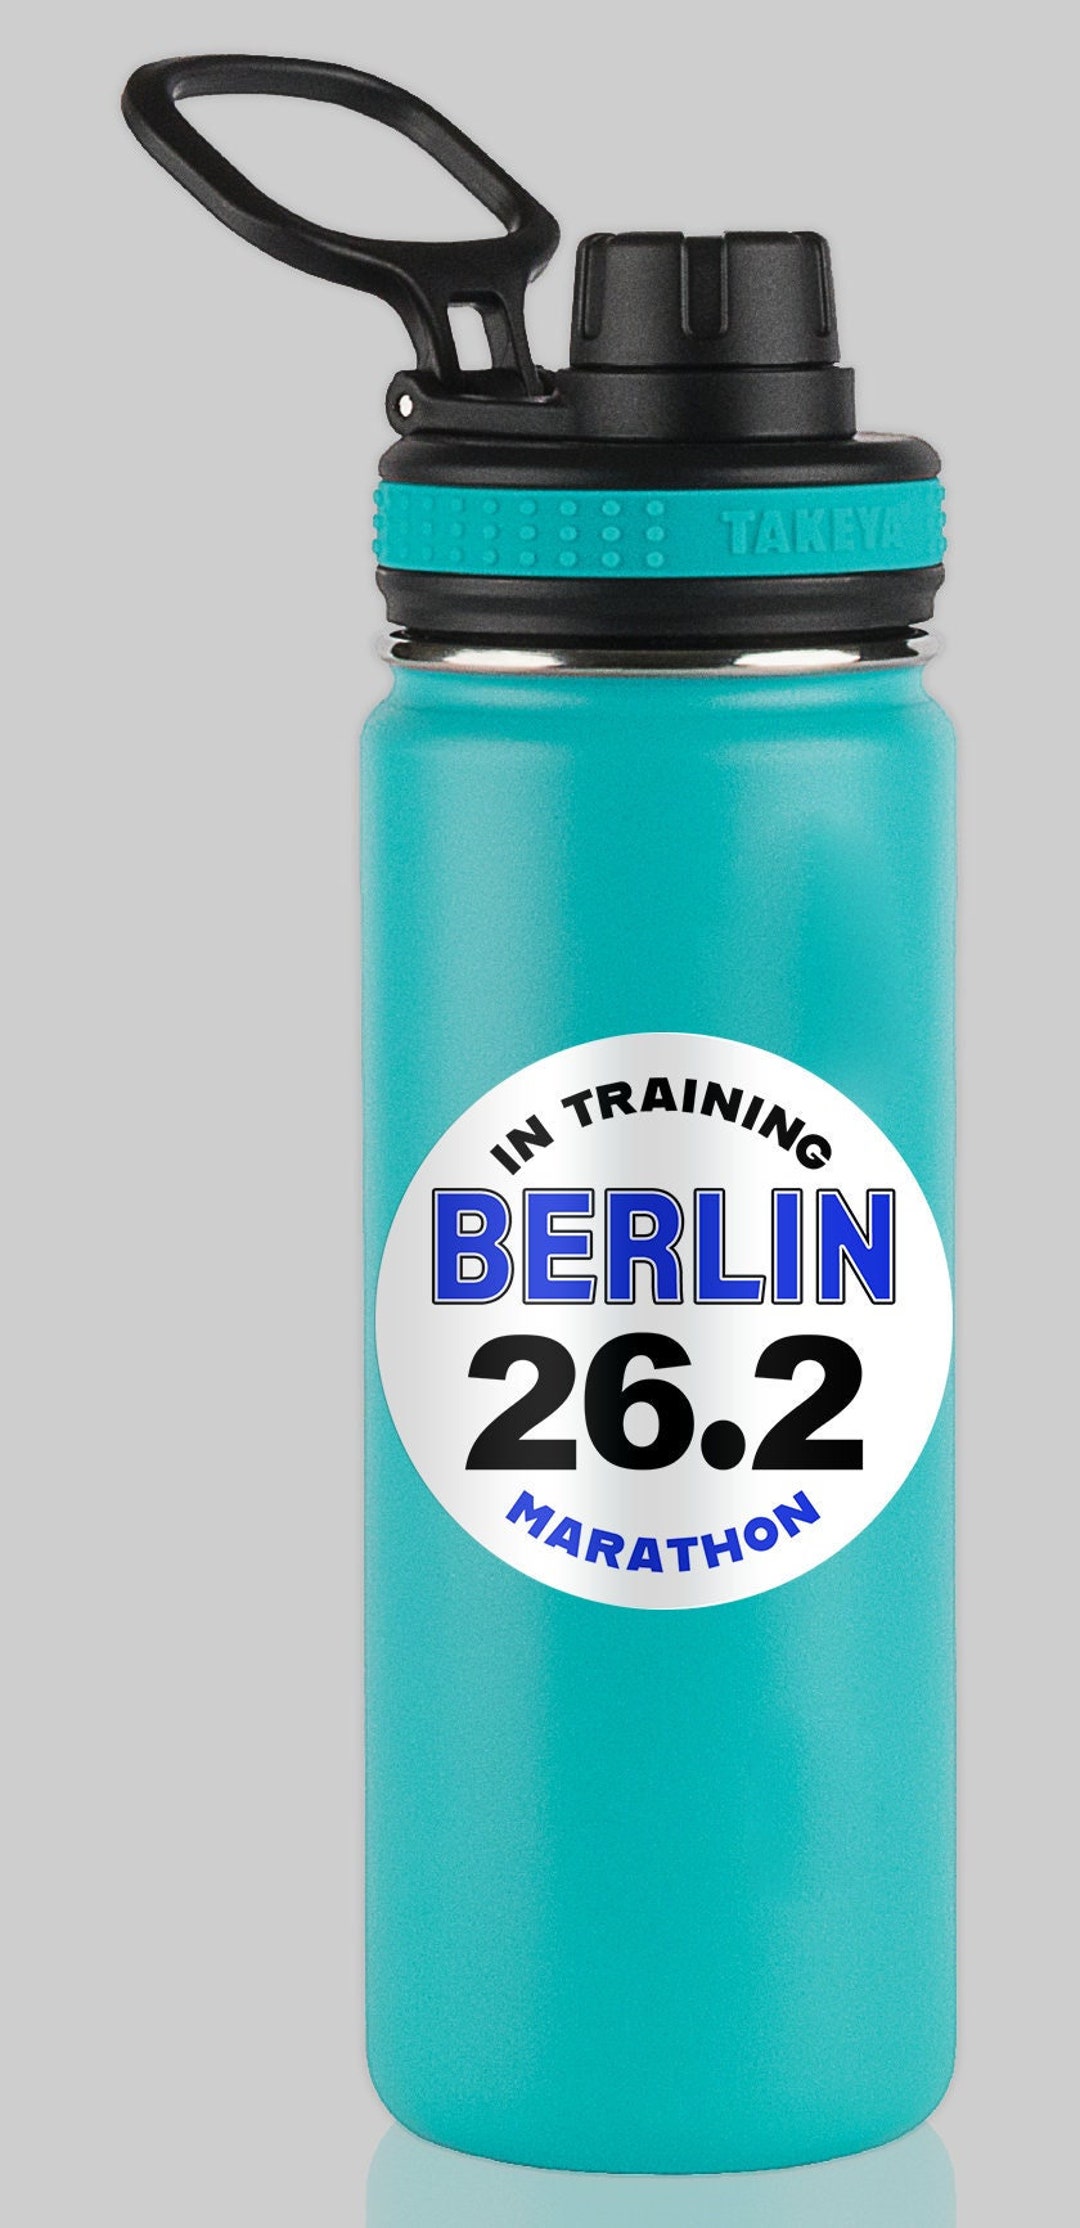 Berlin 26.2 Marathon IN TRAINING Water Bottle Mug Sticker